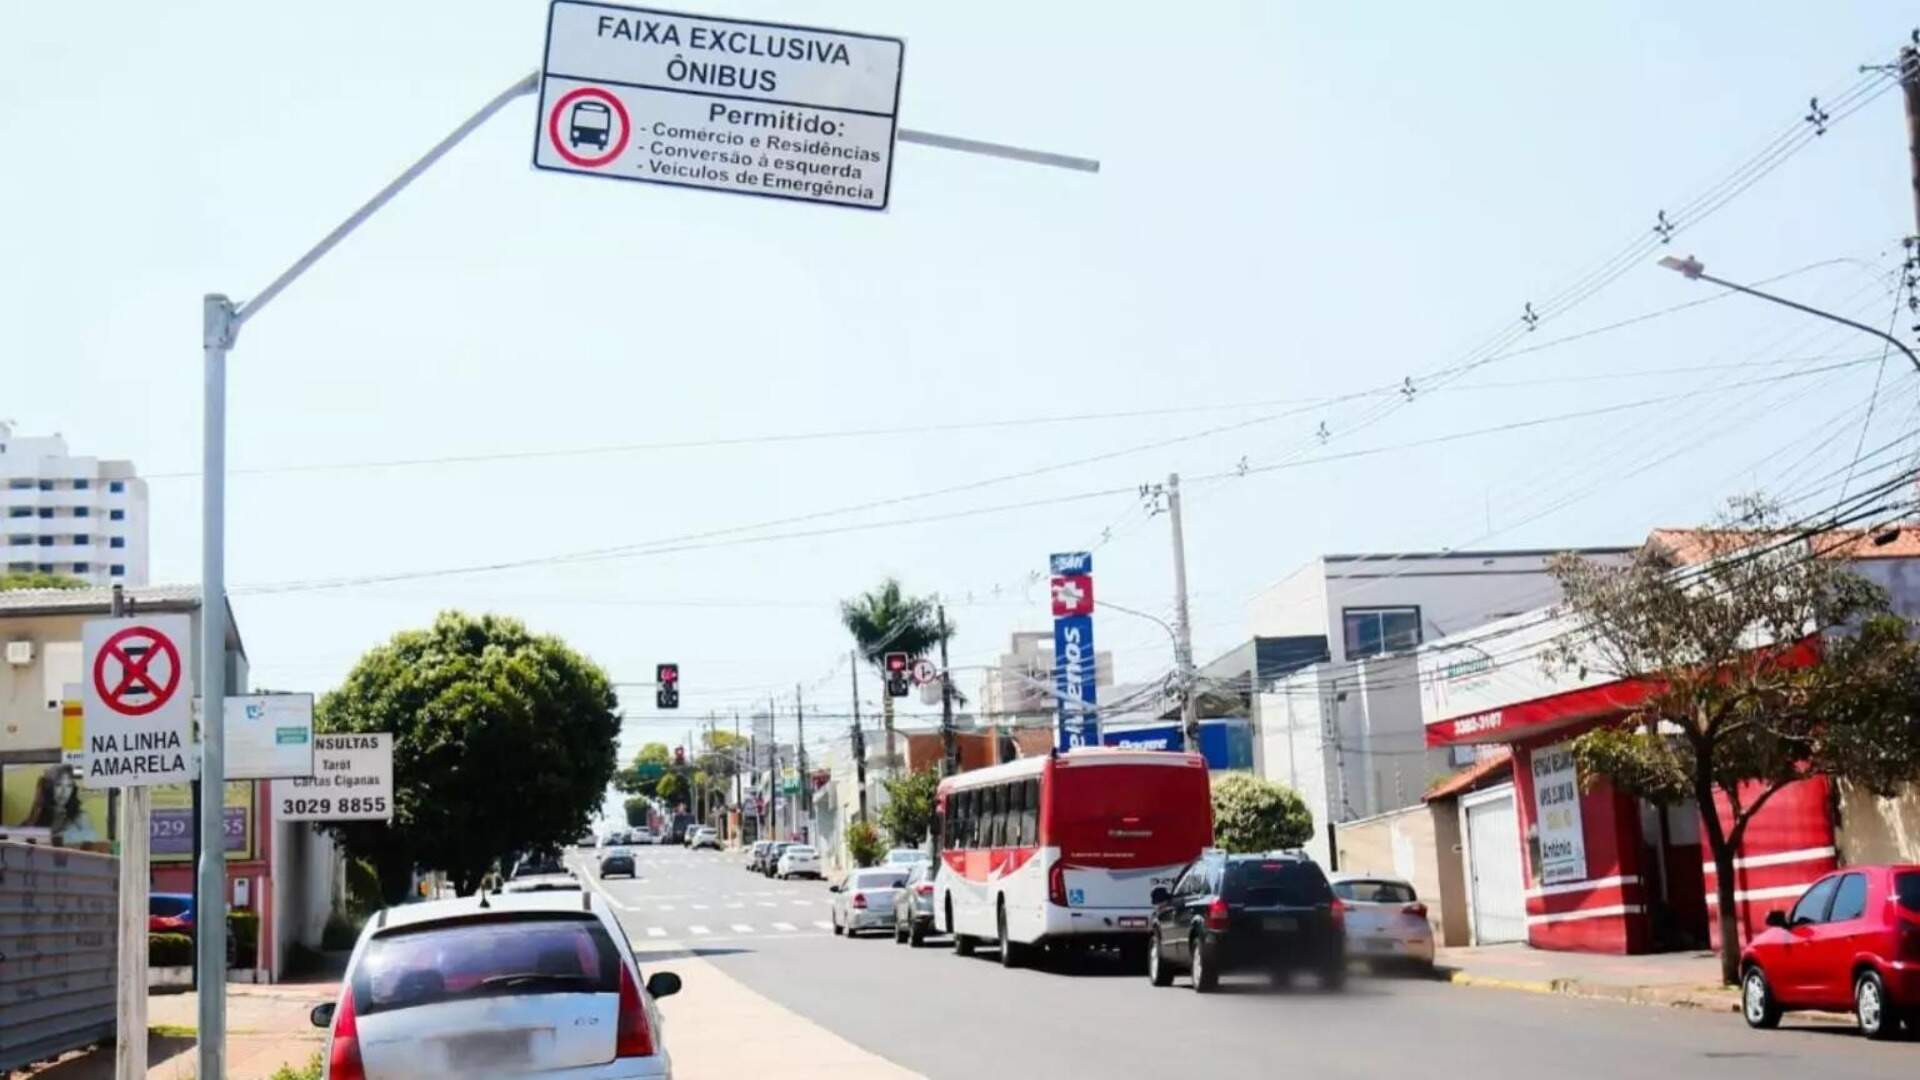 Agetran admite tumulto em corredor da Bahia, mas diz que acidentes são ‘negligência do condutor’